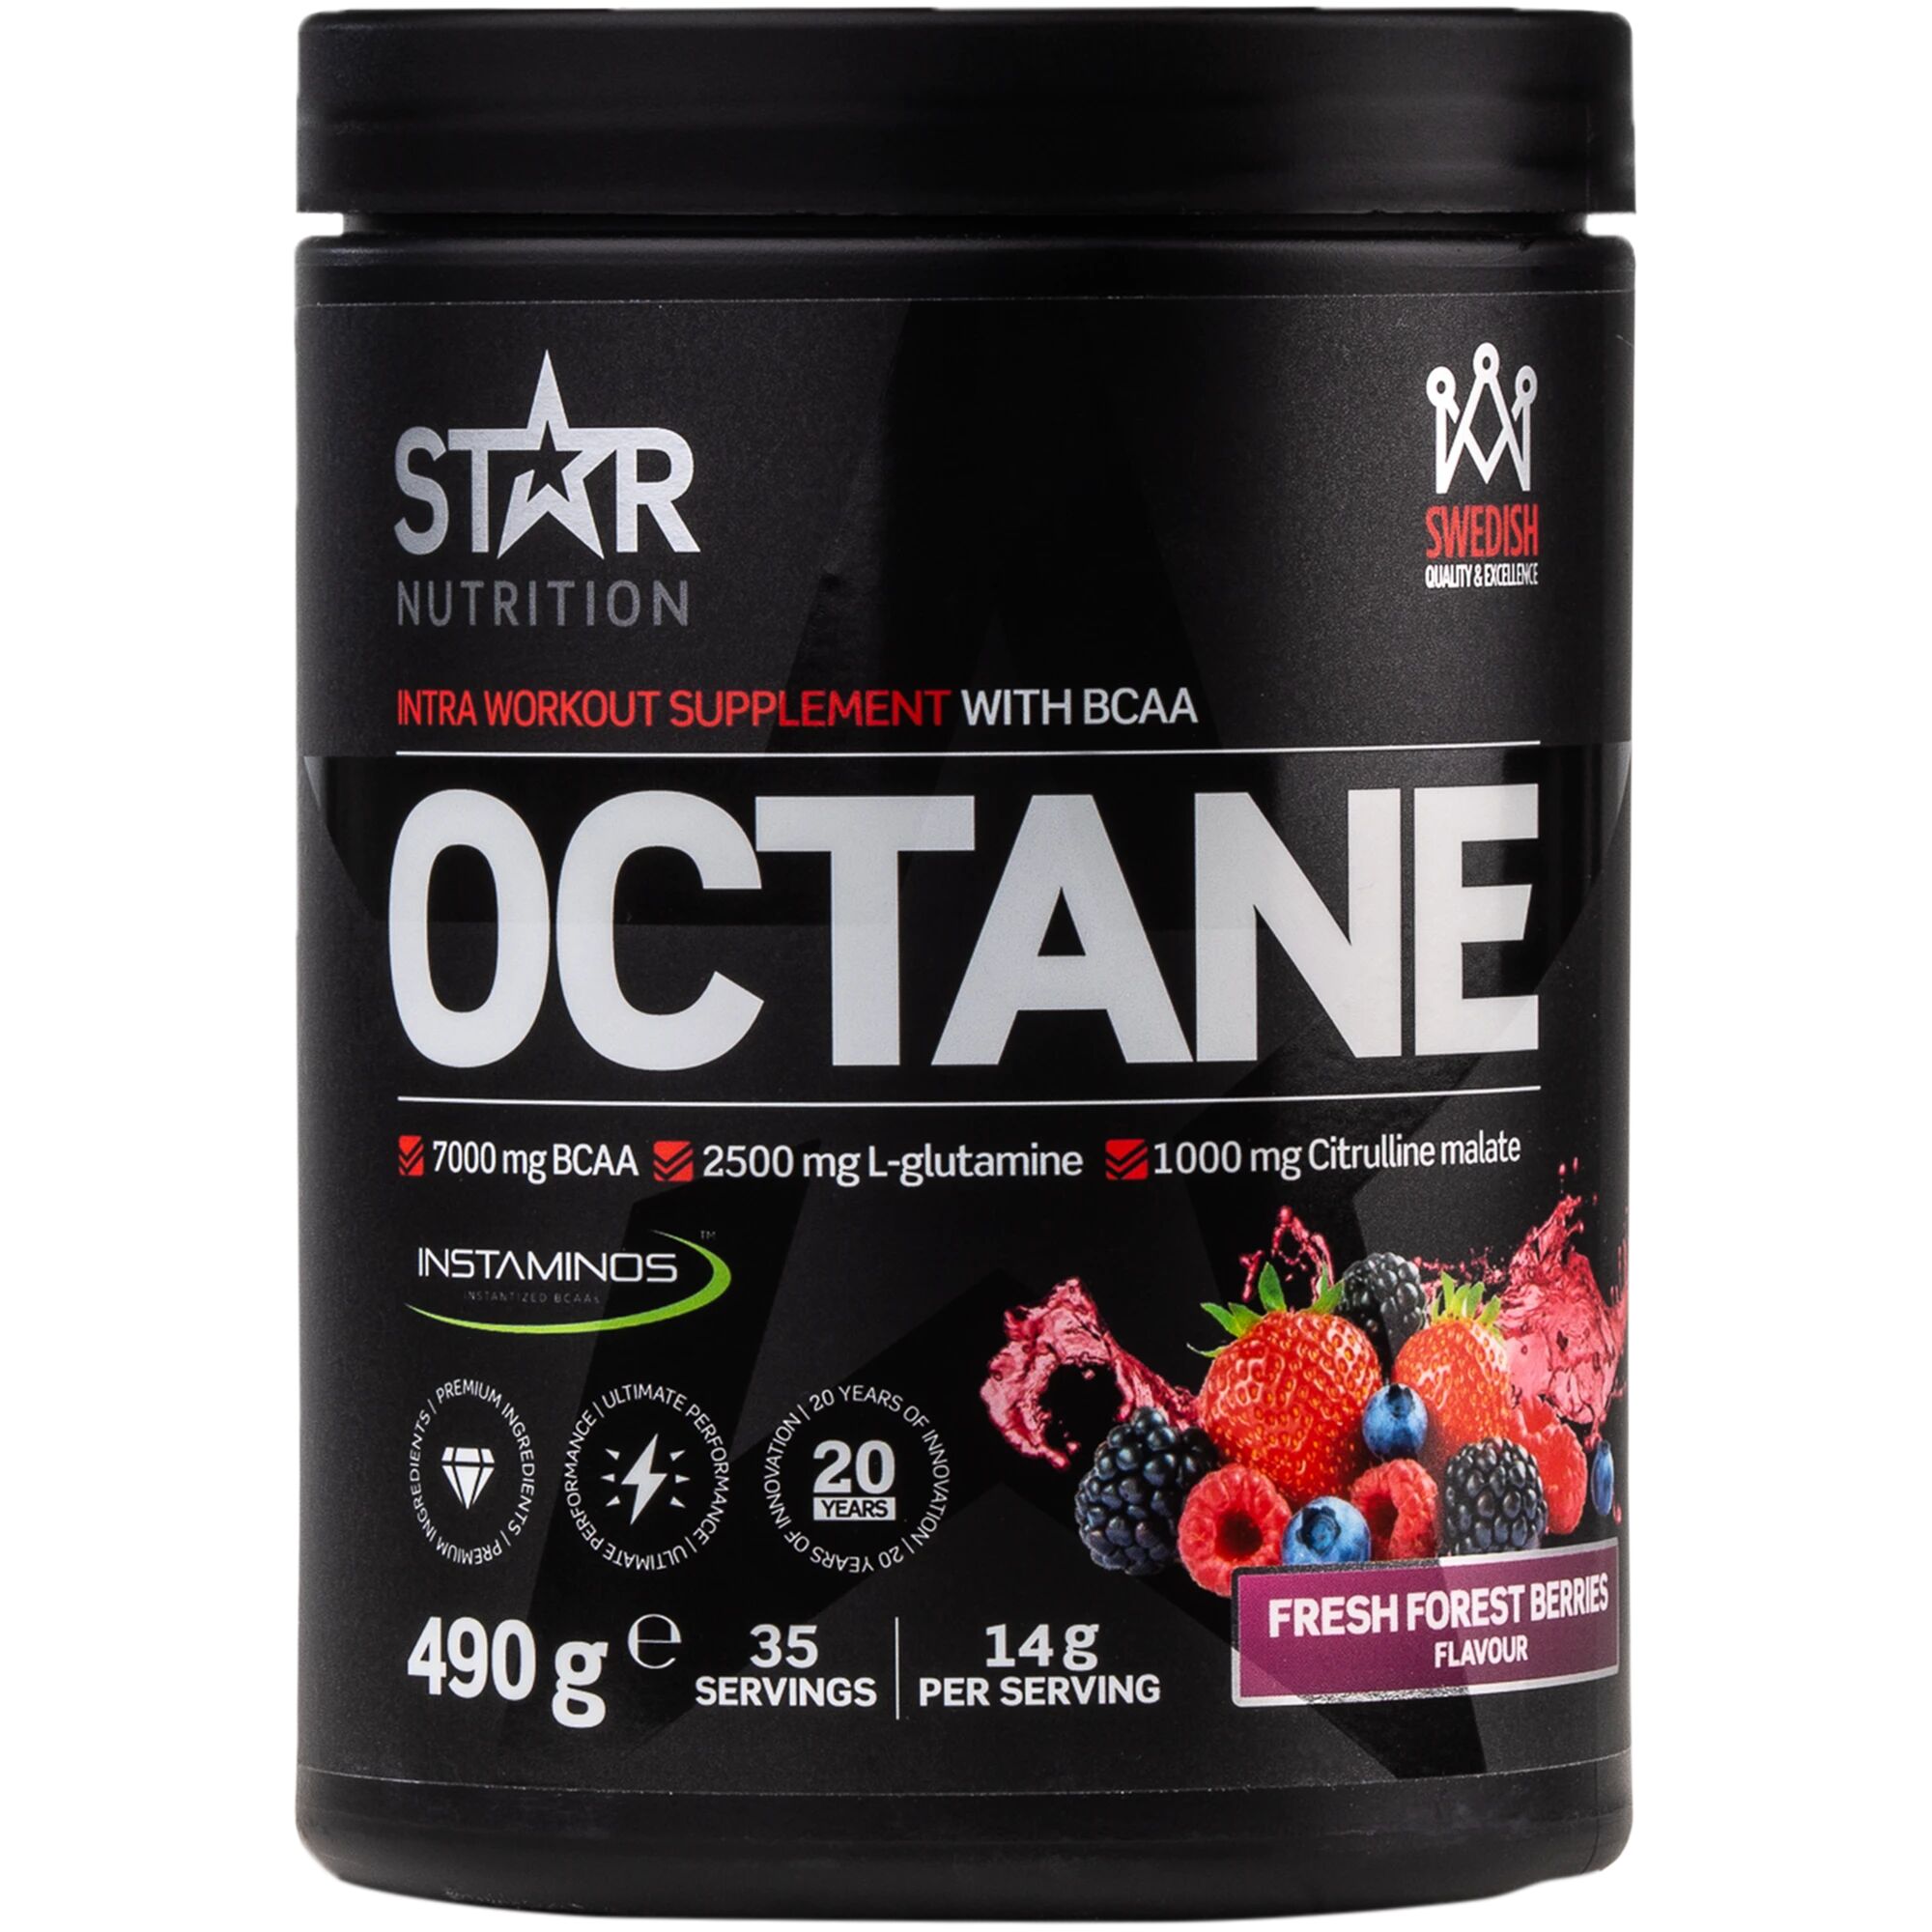 Star Nutrition Octane 490 g 490g Freshforestberries